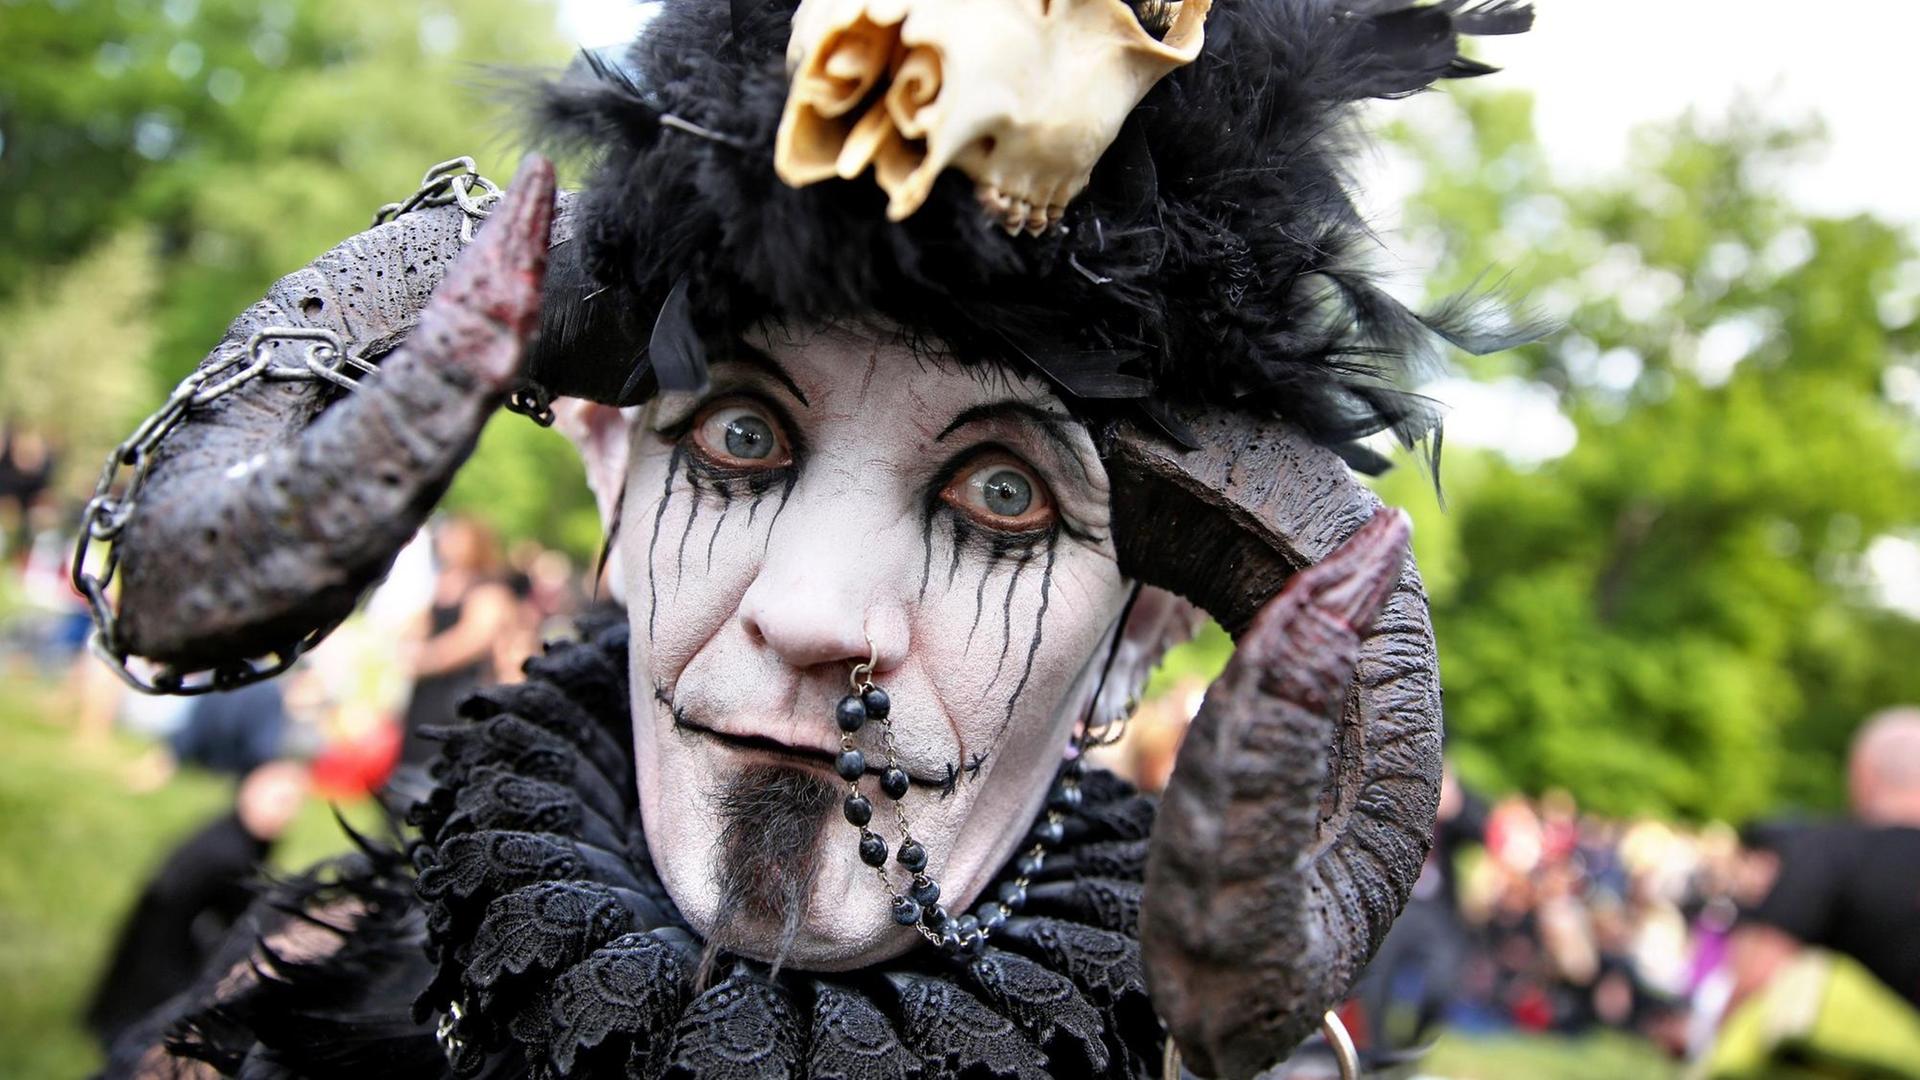 Teilnehmer des Wave-Gotik-Treffens in Leipzig 2015 mit weiß-schwarz geschminktem Gesicht und Hörnern auf dem Kopf.